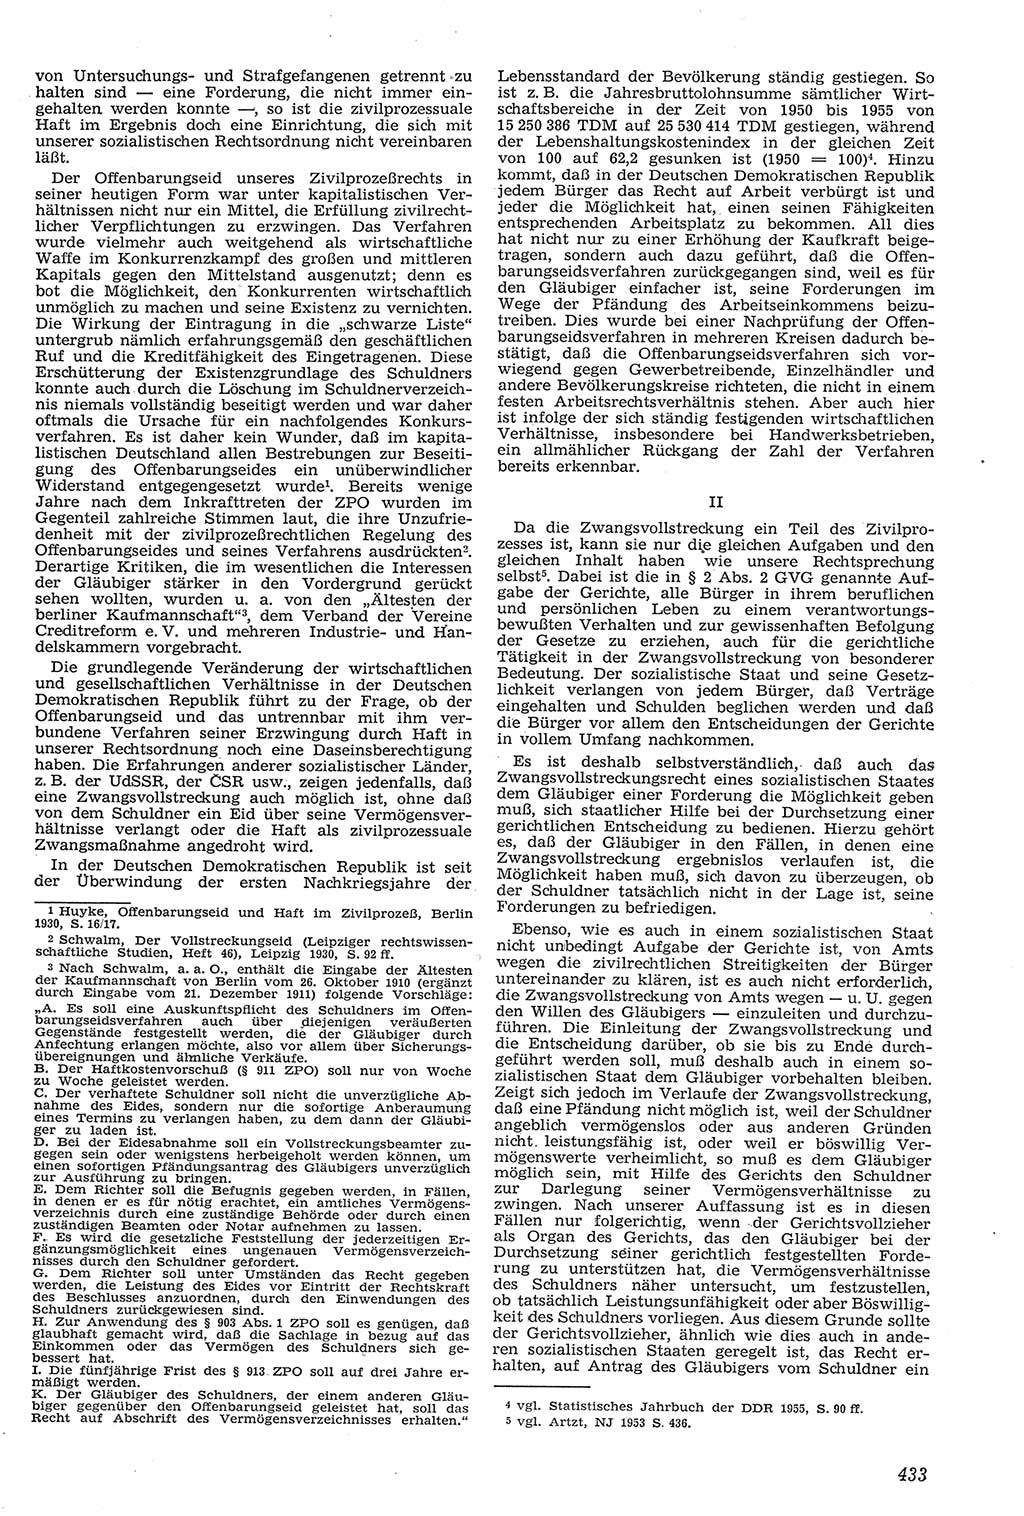 Neue Justiz (NJ), Zeitschrift für Recht und Rechtswissenschaft [Deutsche Demokratische Republik (DDR)], 11. Jahrgang 1957, Seite 433 (NJ DDR 1957, S. 433)